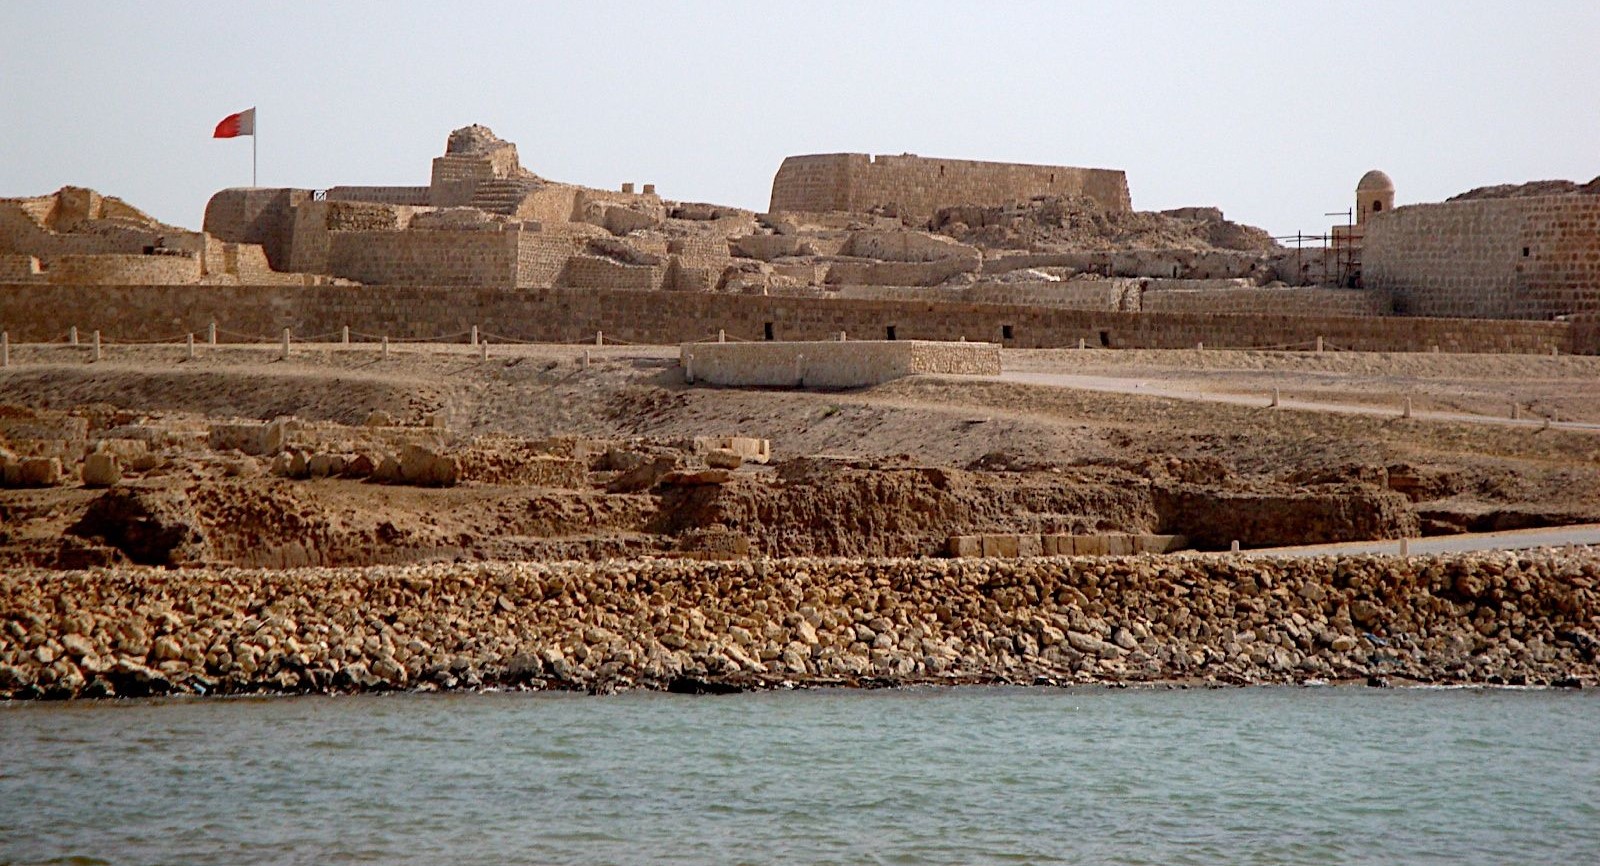 Qal’at al-Bahrain